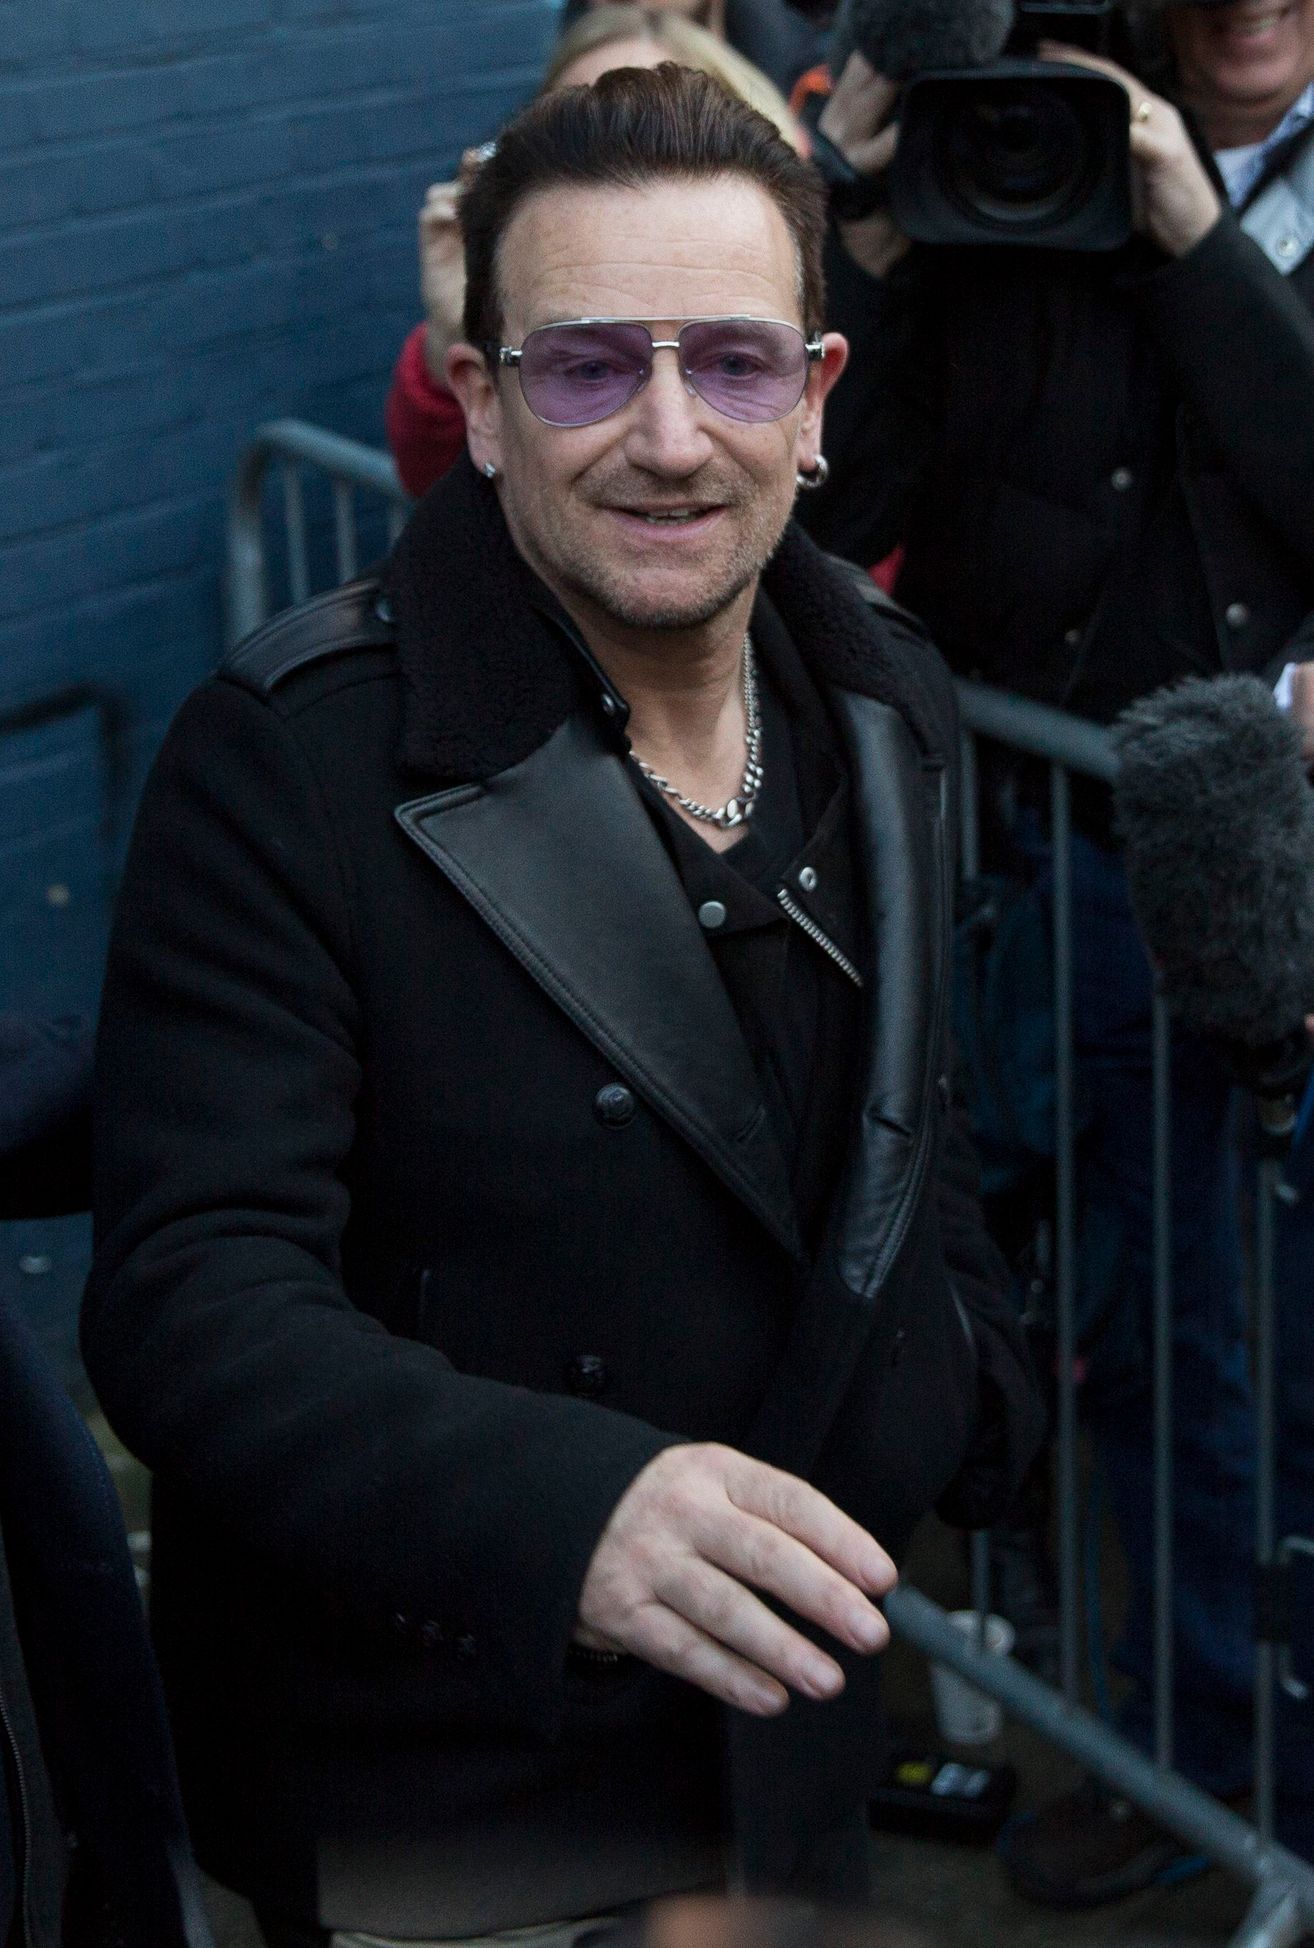 Bono Vox - Band Aid 30